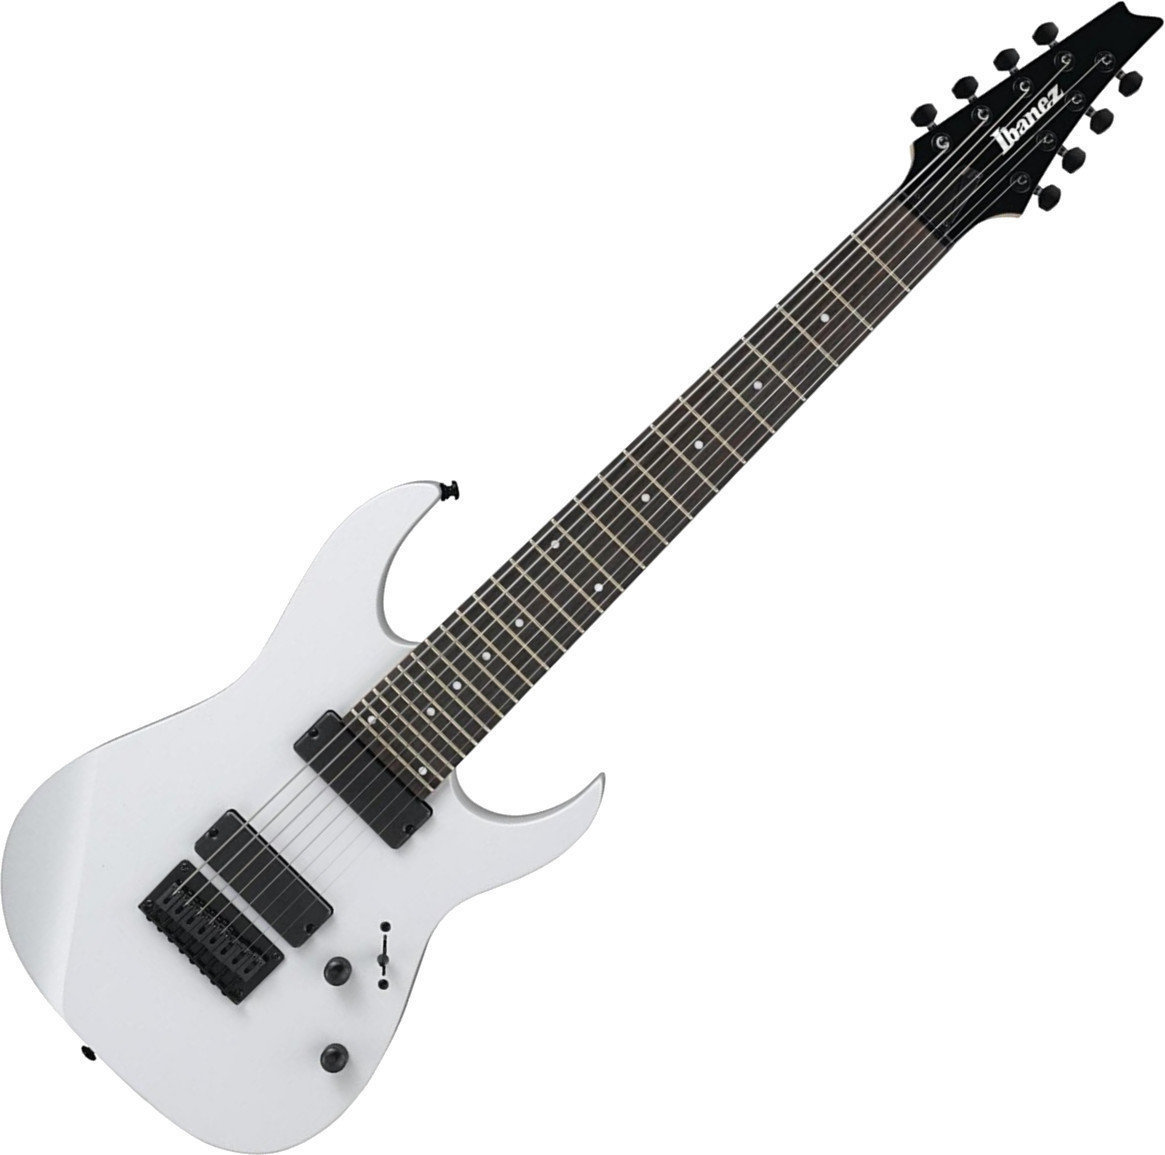 8-saitige E-Gitarre Ibanez RG8-WH White